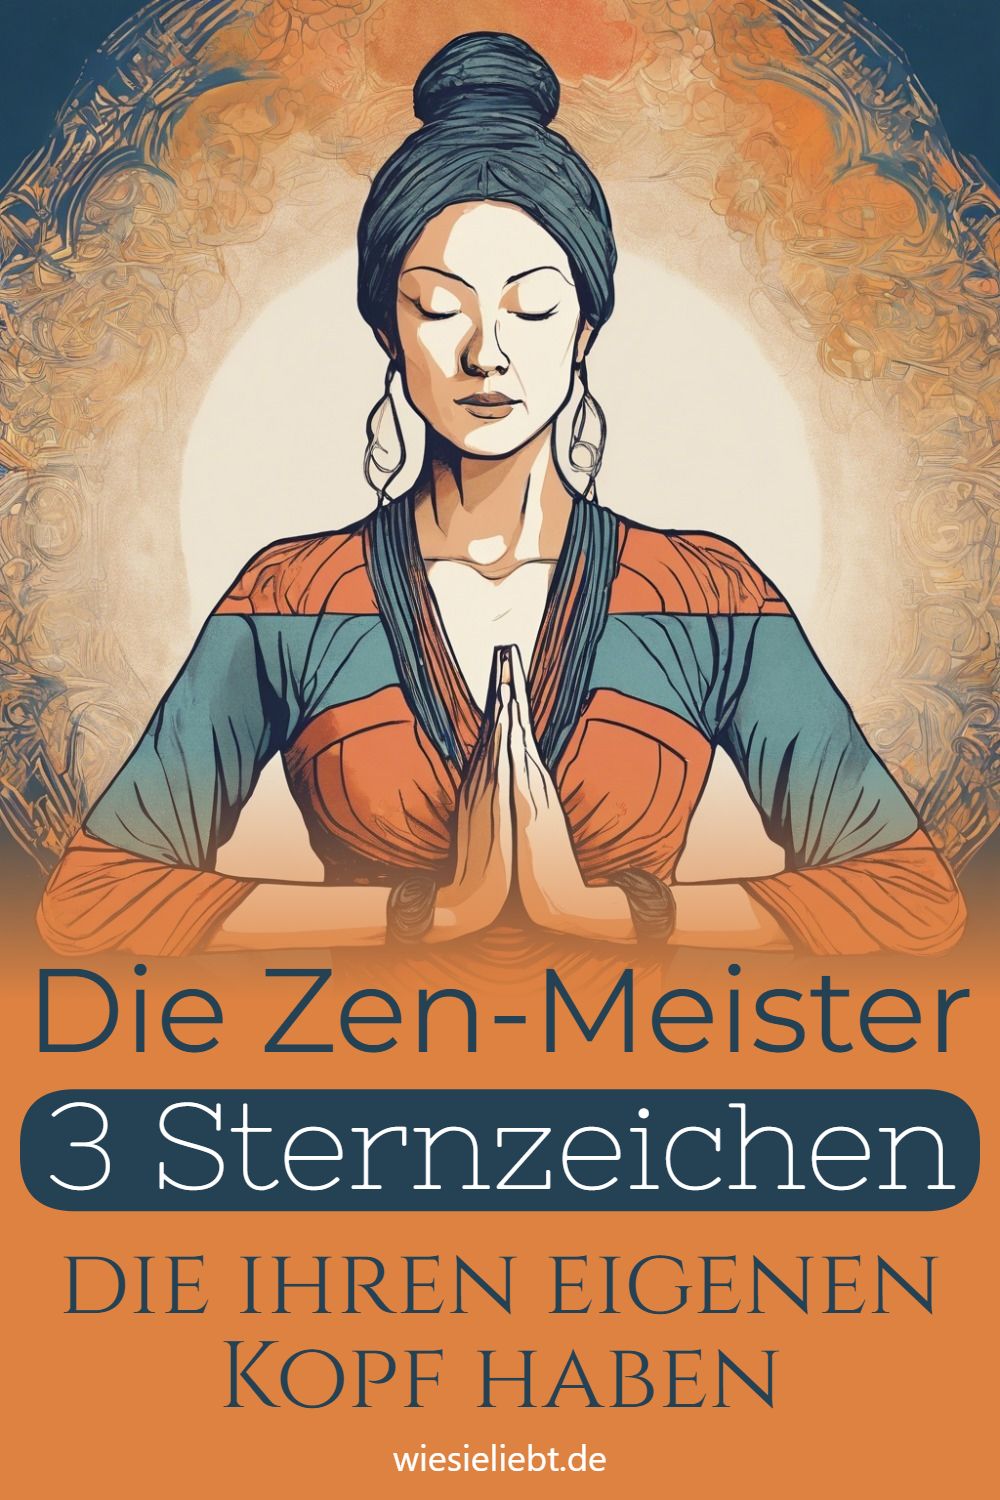 Die Zen-Meister 3 Sternzeichen die ihren eigenen Kopf haben